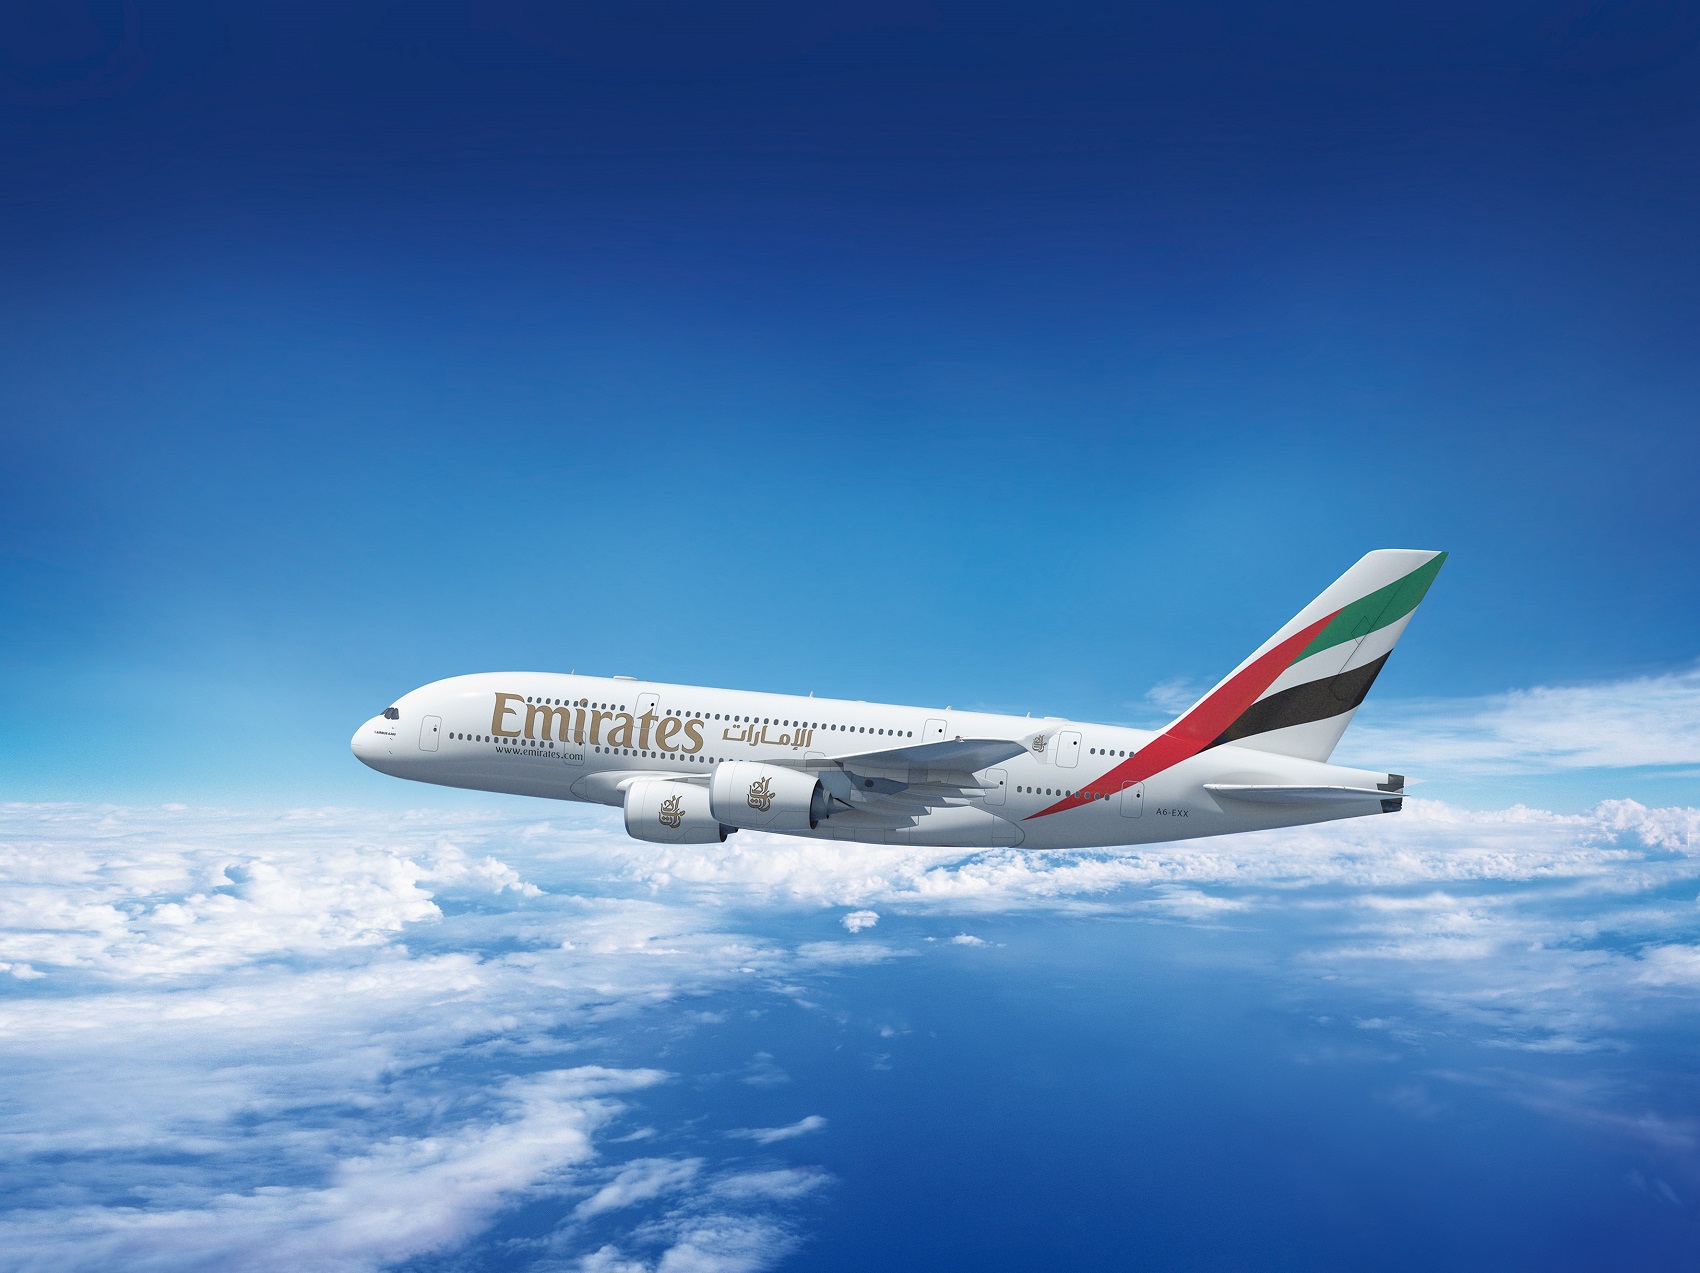 طيران-الإمارات-أول-ناقلة-تشغل-إيرباص-a380-إلى-بنغالورو-الهندية-بدءًا-من-30-أكتوبر